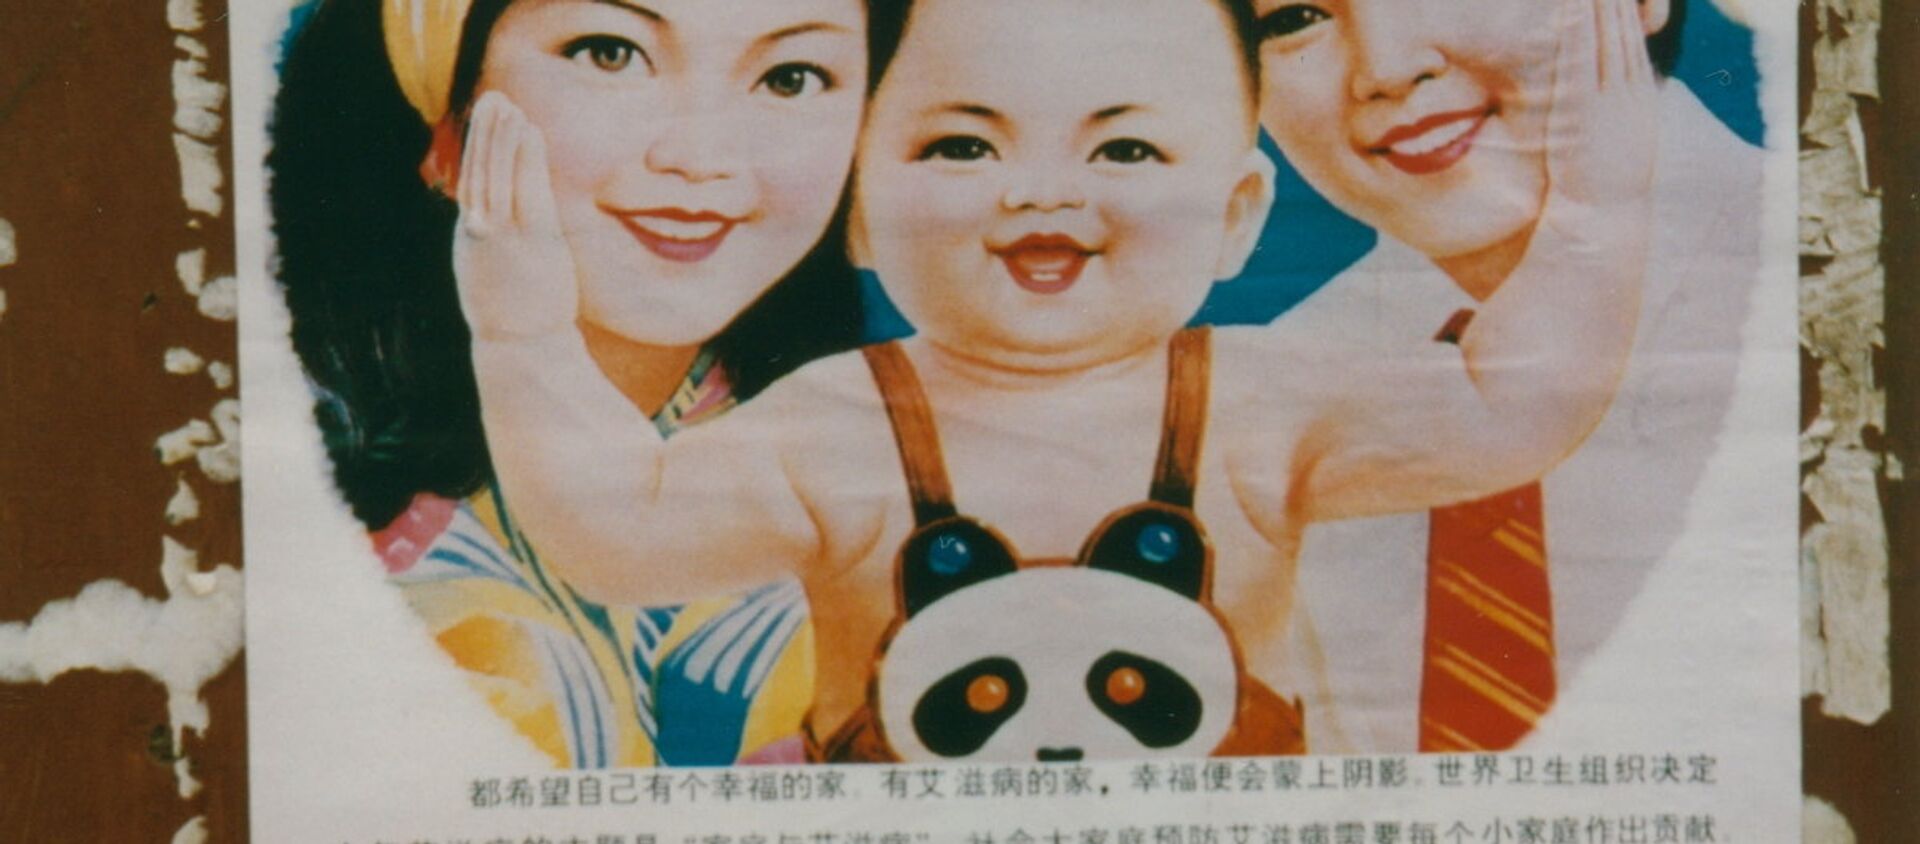 Póster sobre la política de hijo único en China - Sputnik Mundo, 1920, 05.01.2019